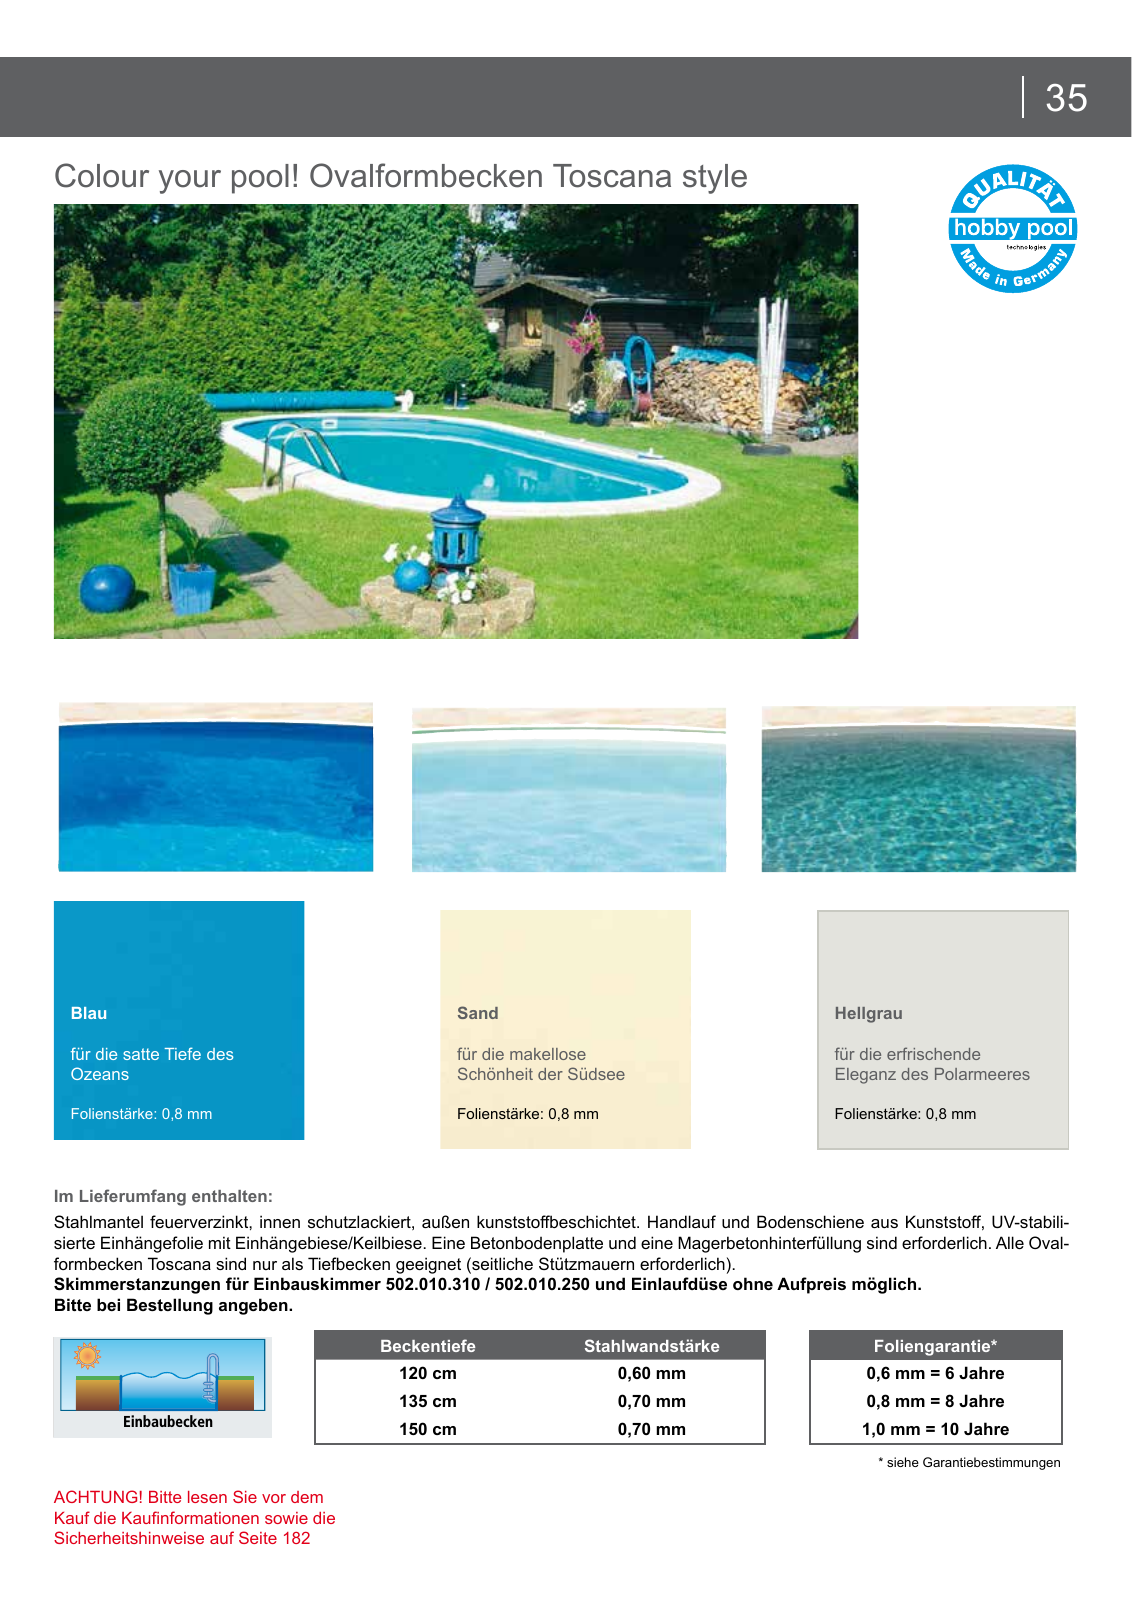 Vorschau Hobby pool Schwimmbadkatalog 2016 Seite 35